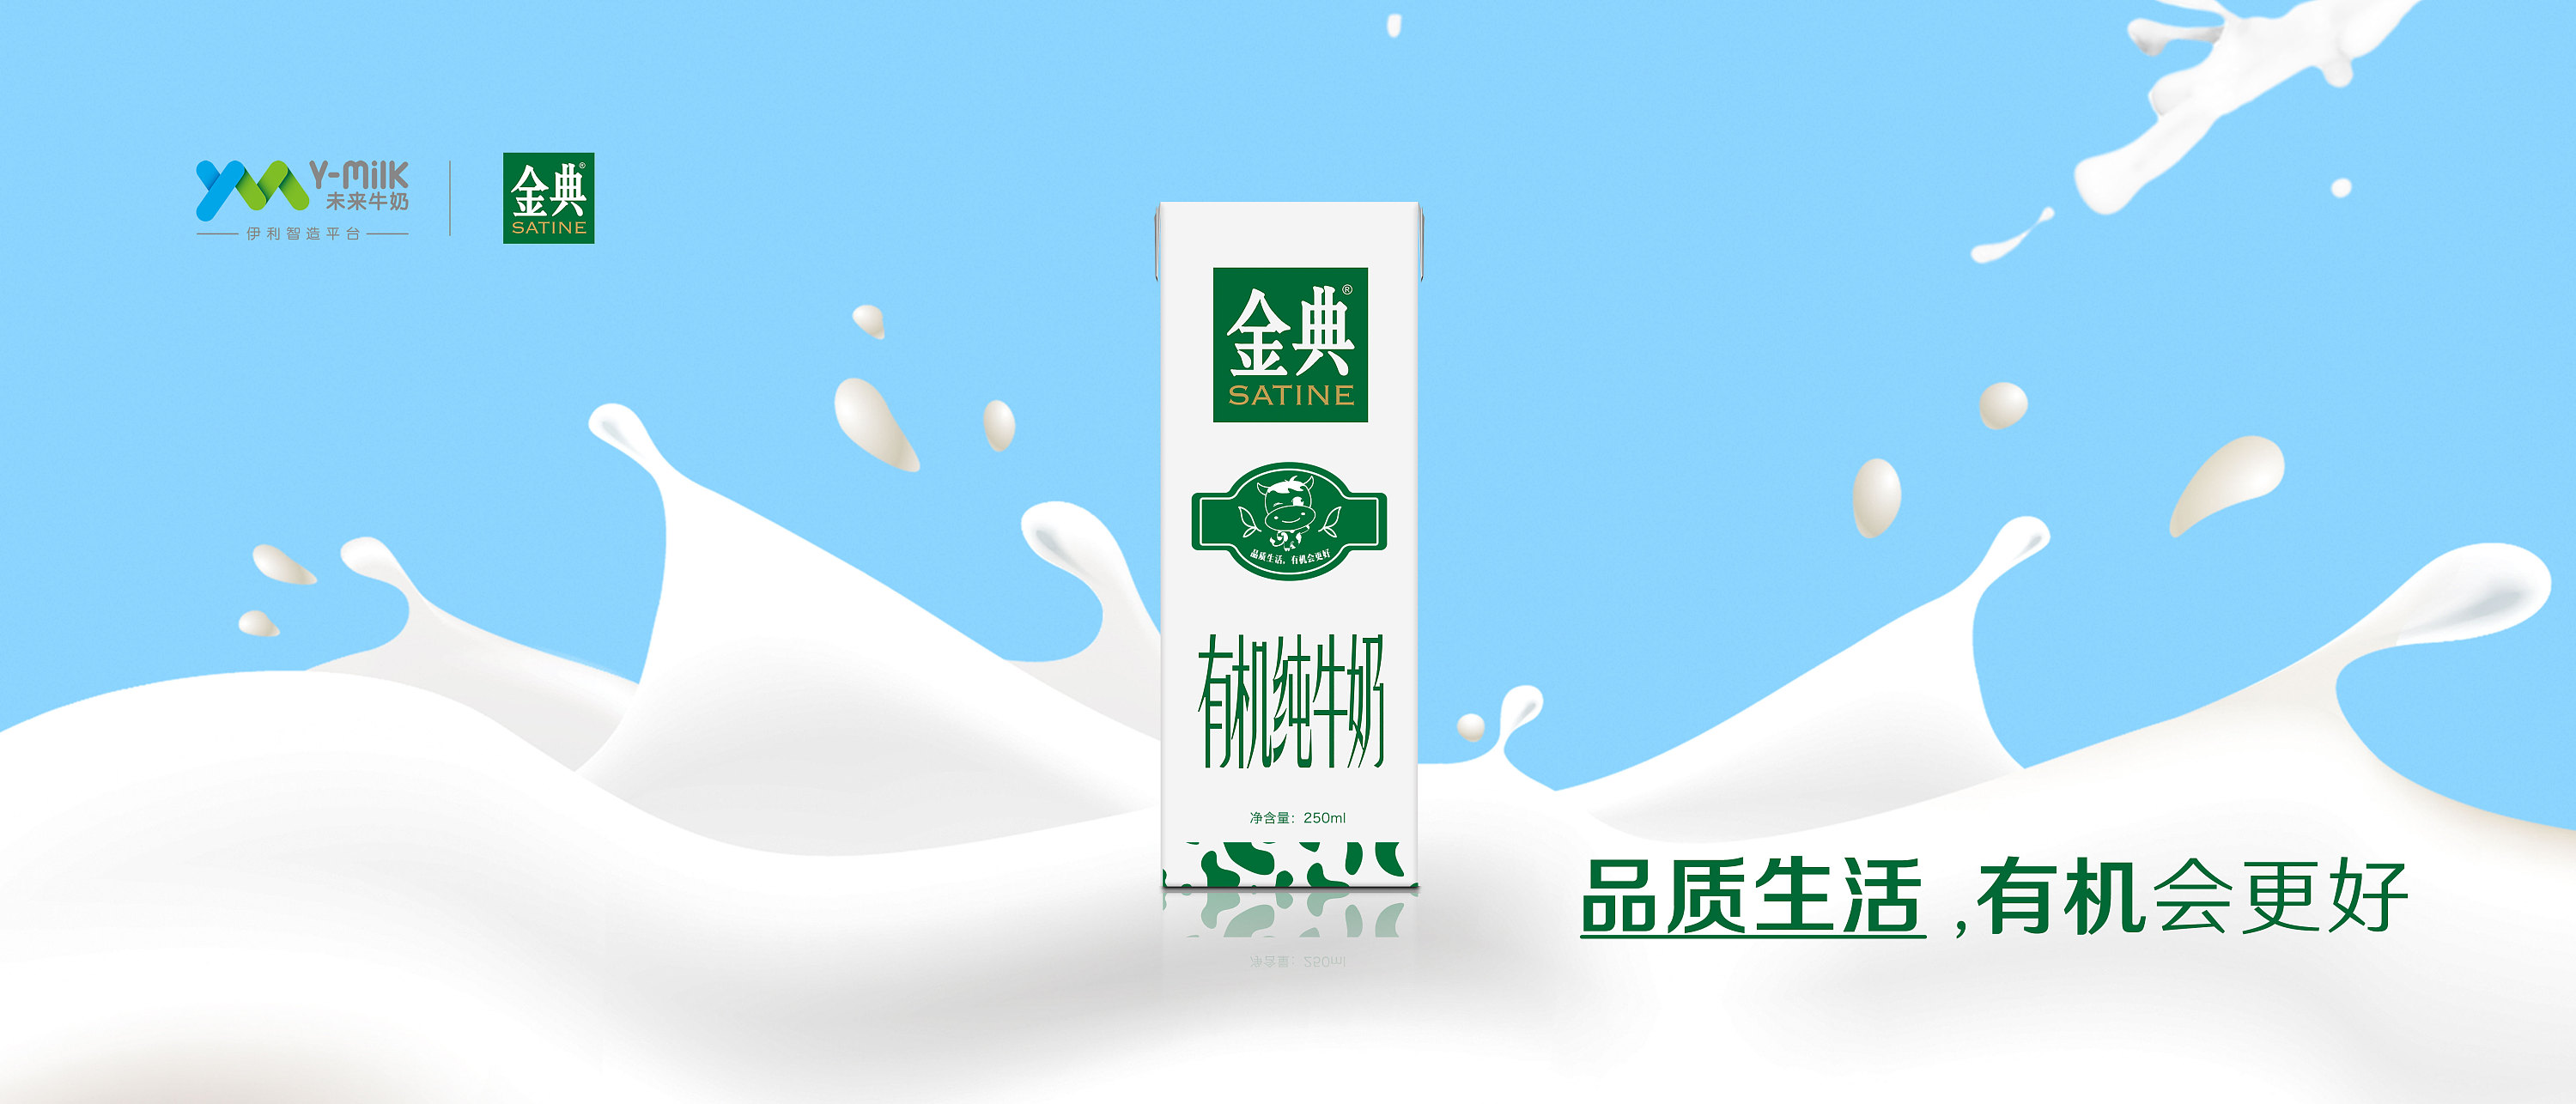 金典牛奶logo图片